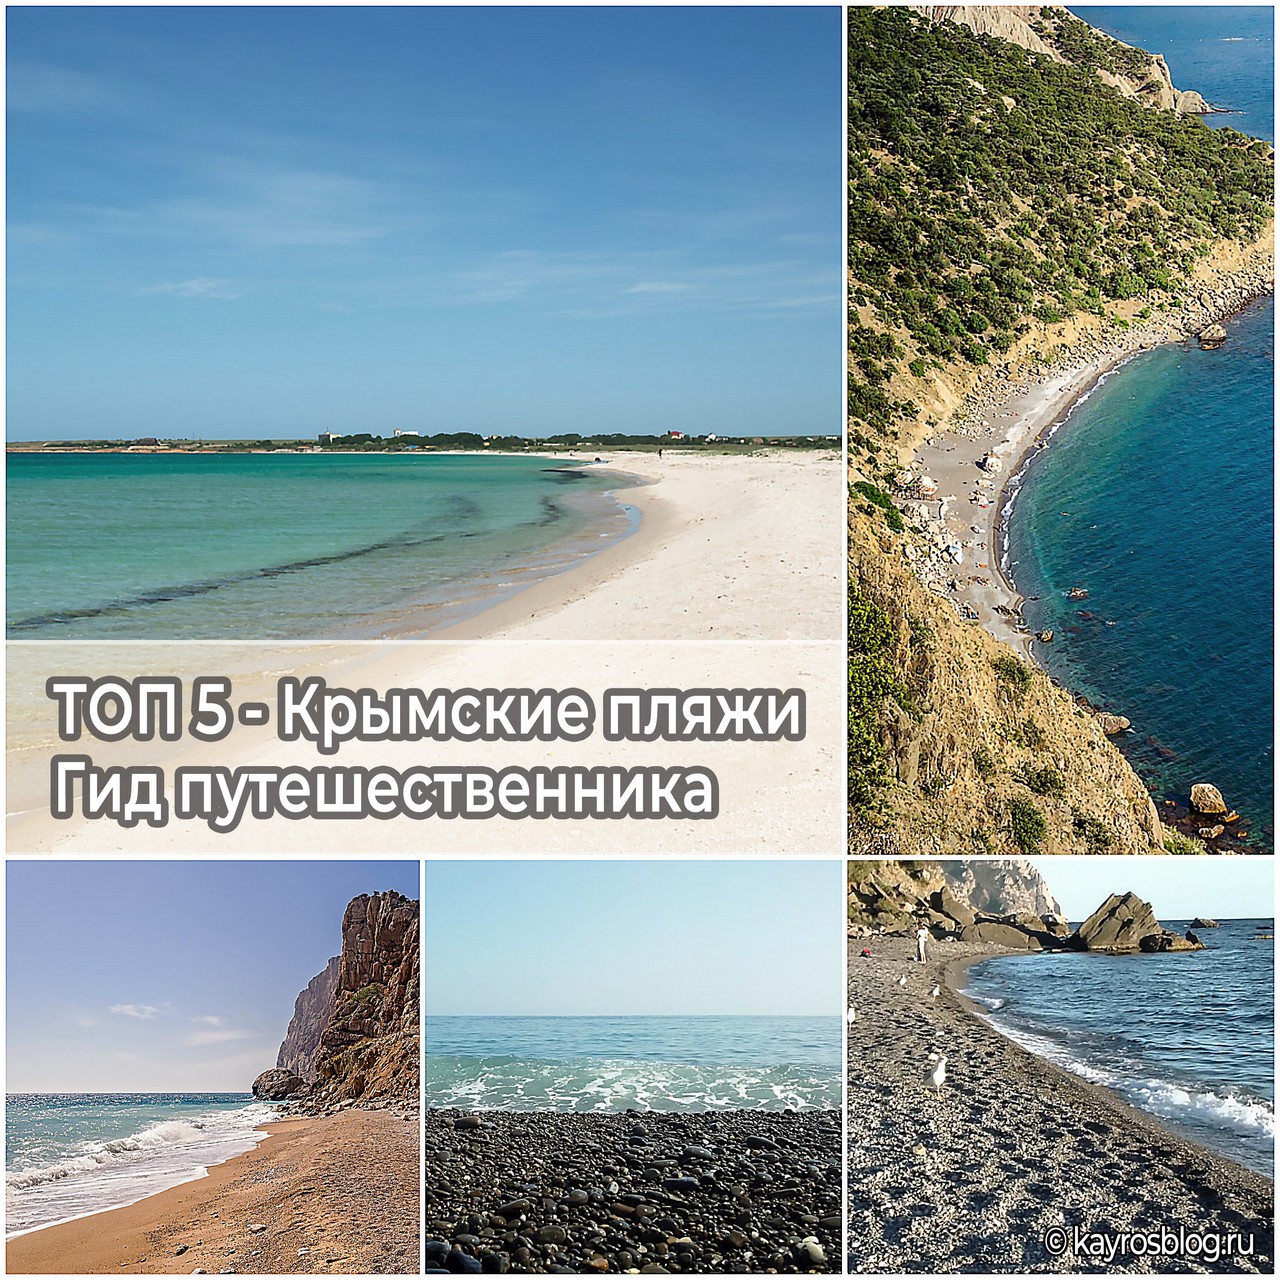 ТОП 5 - Крымские пляжи - Гид путешественника